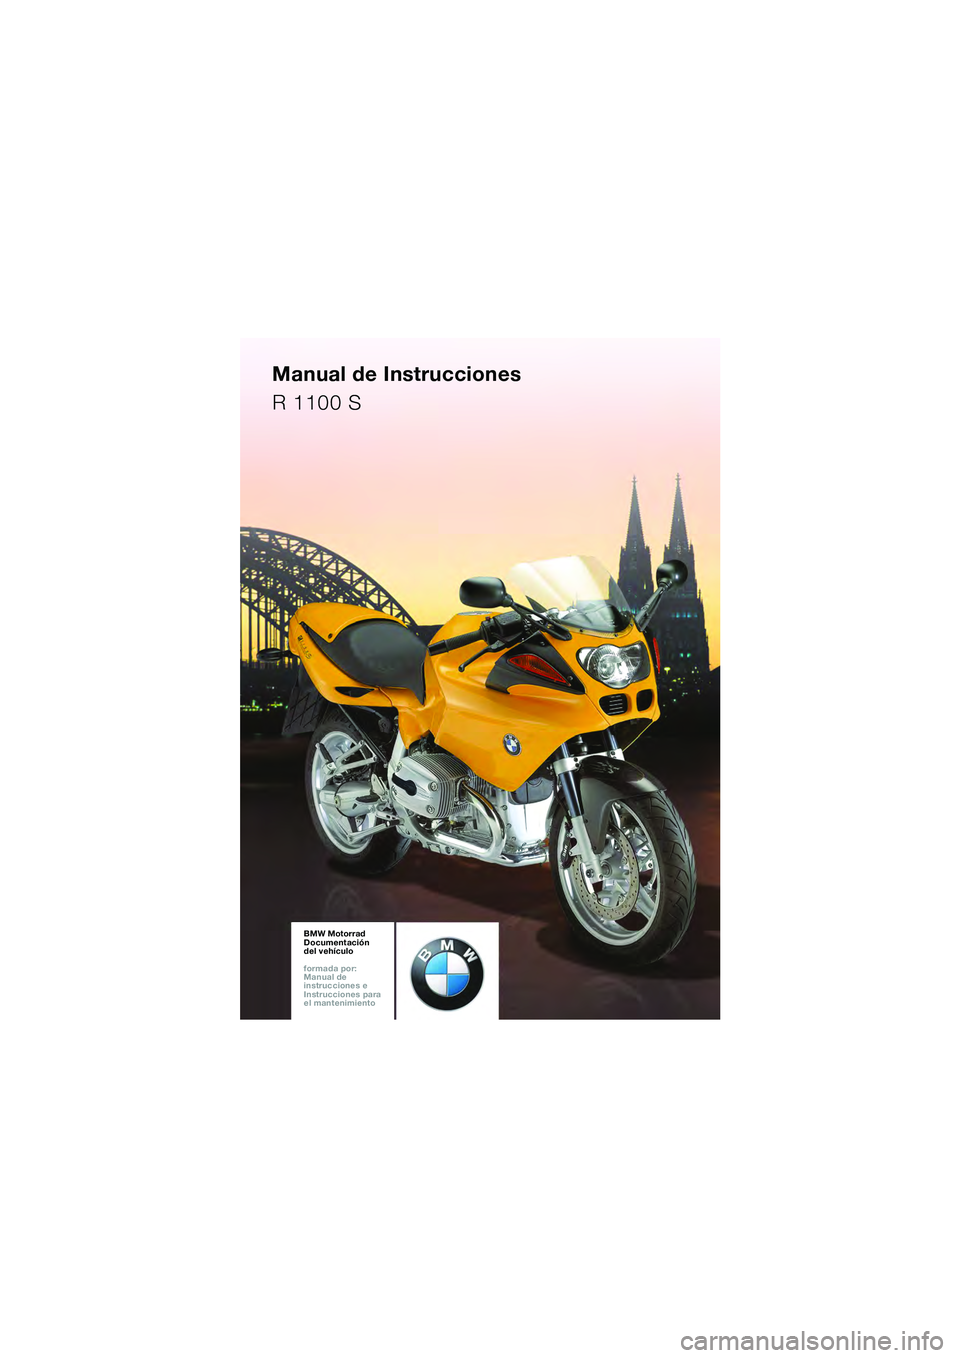 BMW MOTORRAD R 1100 S 2002  Manual de instrucciones (in Spanish) BMW Motorrad
Documentación 
del vehículo
formada por: 
Manual de 
instrucciones e 
Instrucciones para 
el mantenimiento
Manual de Instrucciones
R 1100 S
10sbke6.bk.fm  Seite 87  Montag, 23. Januar 2